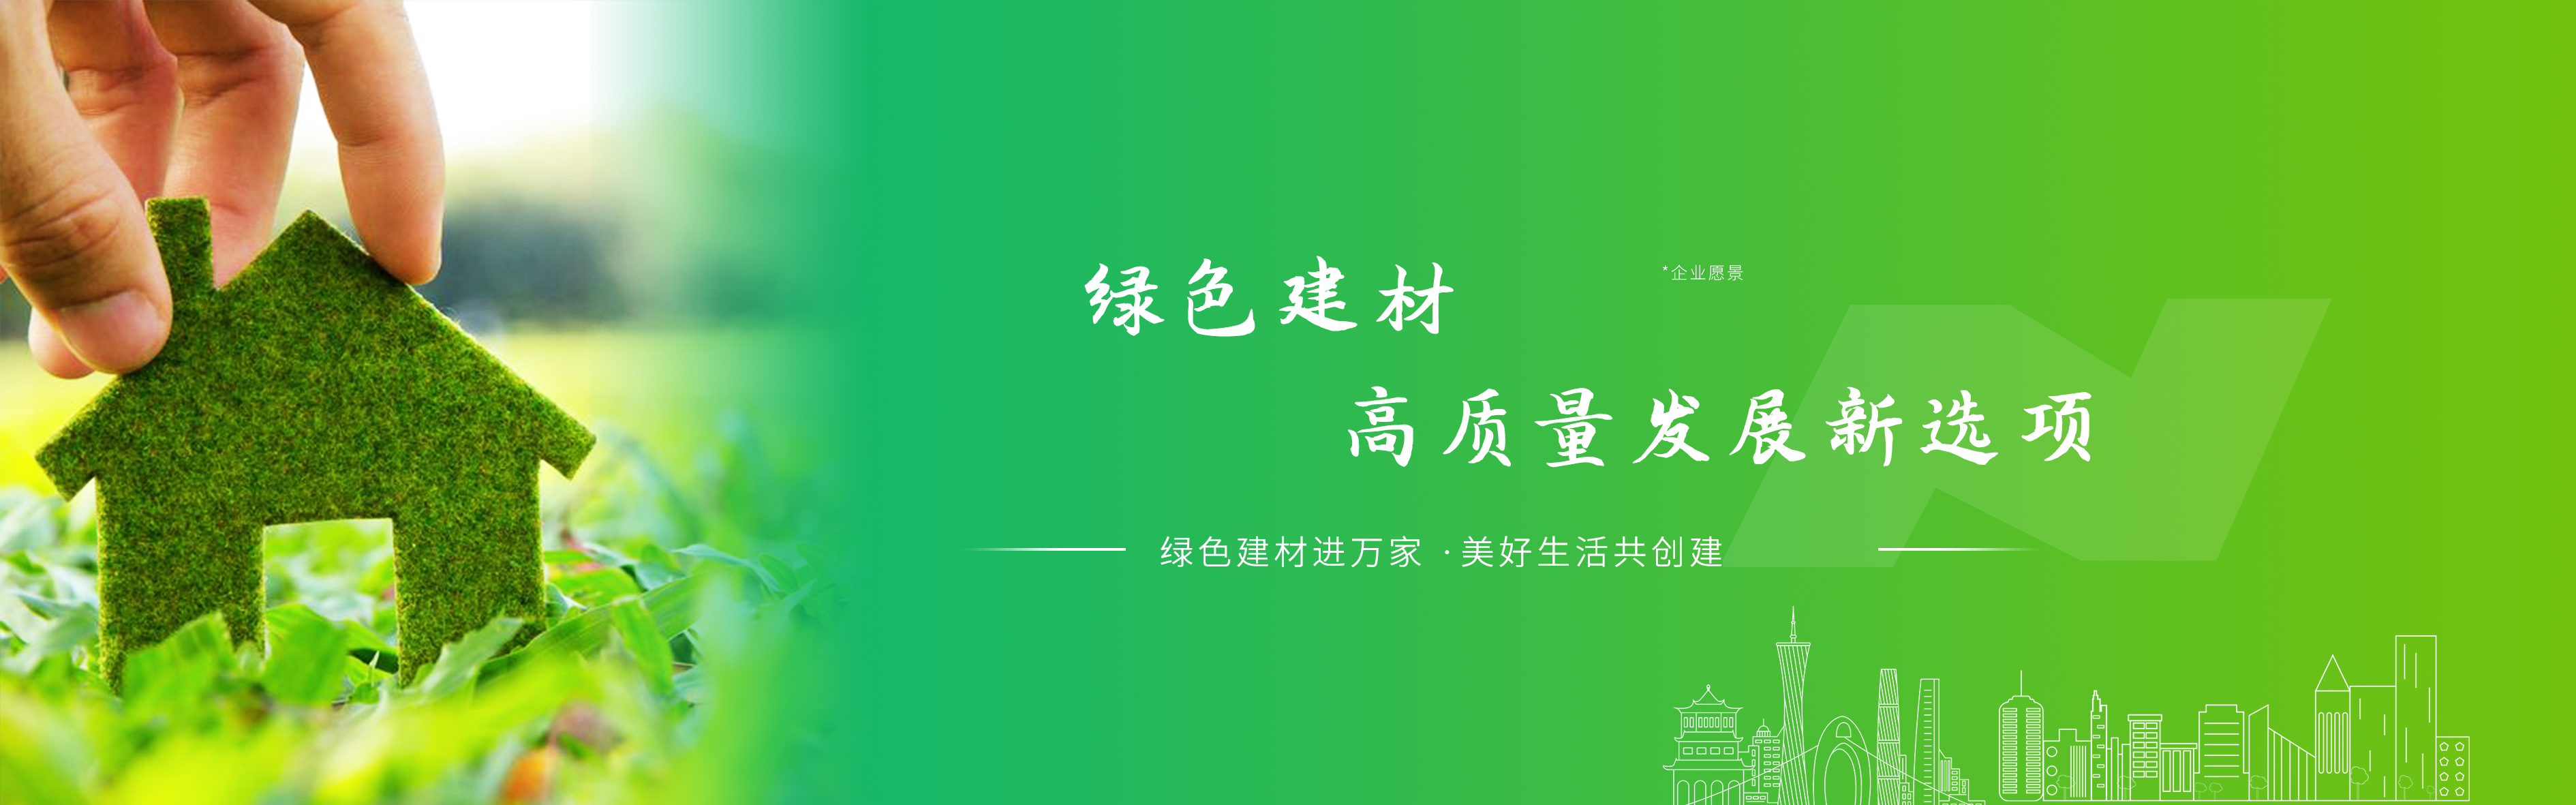 广东禹能建材科技股份有限公司荣获中国绿色建材产品认证证书